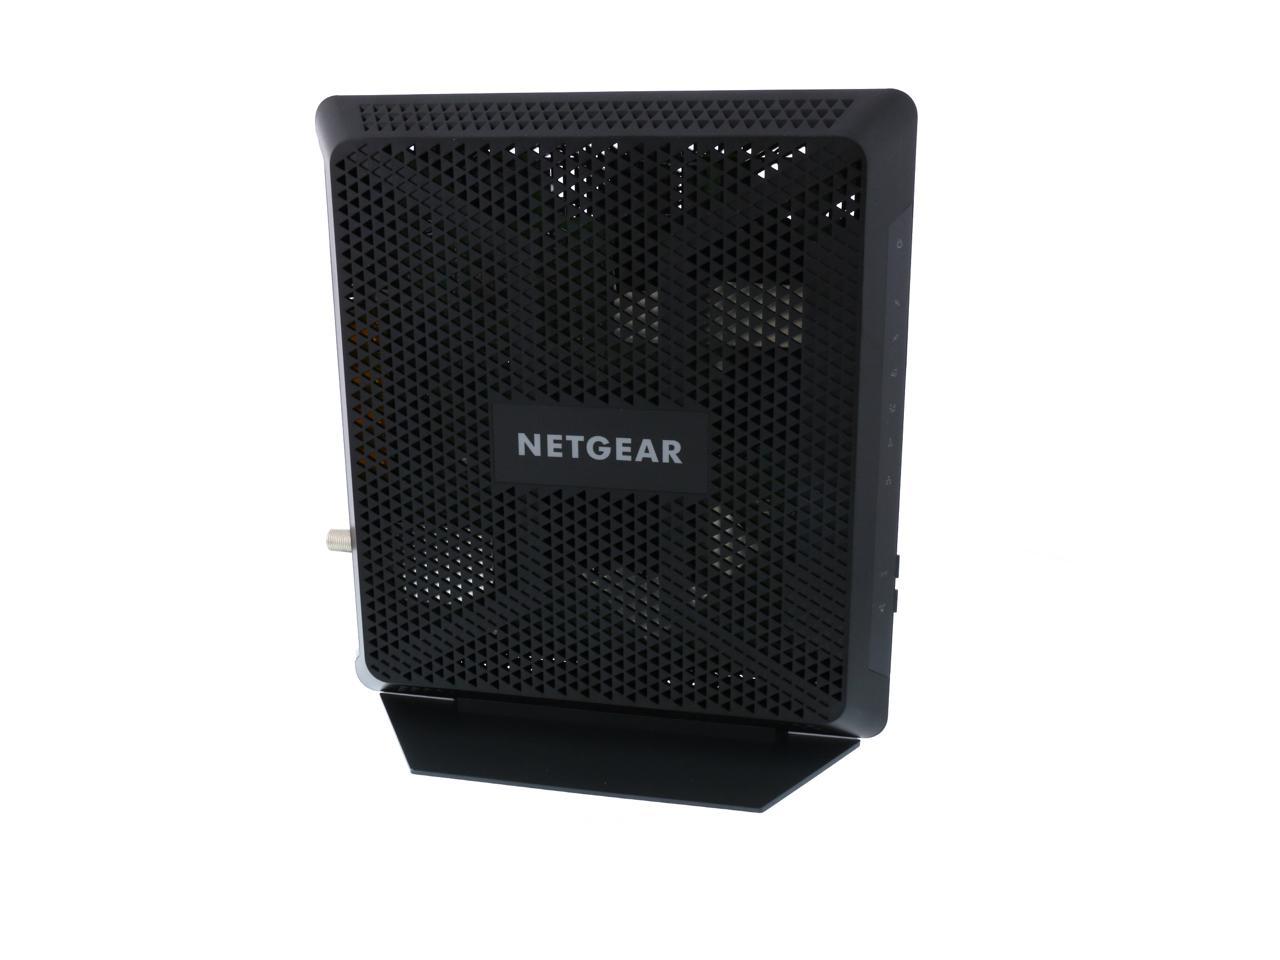 Netgear C7000-100NAS Nighthawk DOCSIS 3.0 Cable Modem Router - Newegg.com